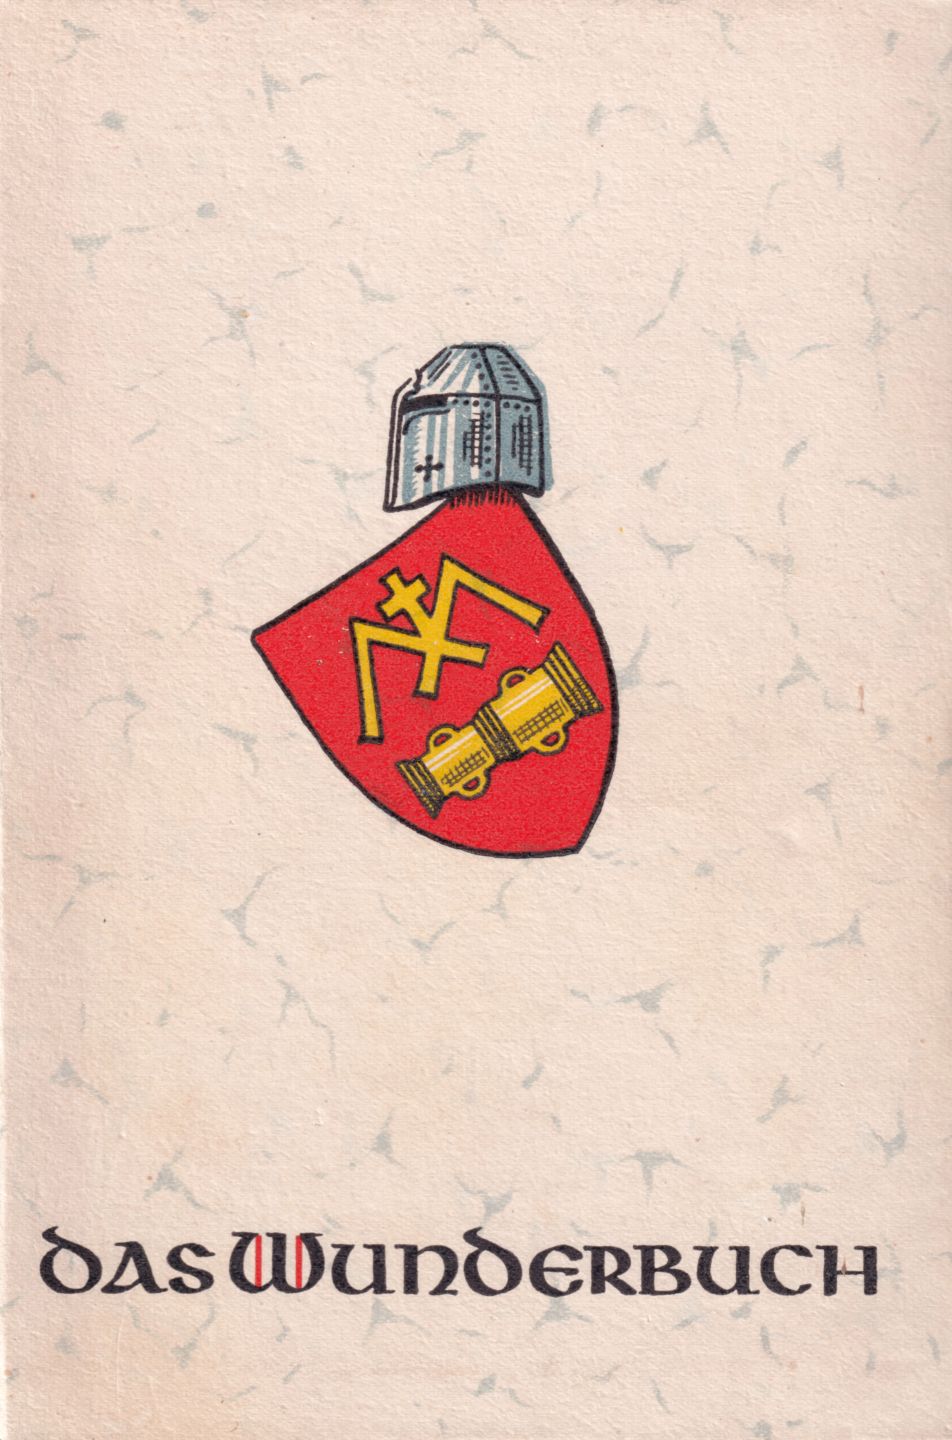 Titelseite des Buchs „Das Wunderbuch“ mit Helm und Wappen